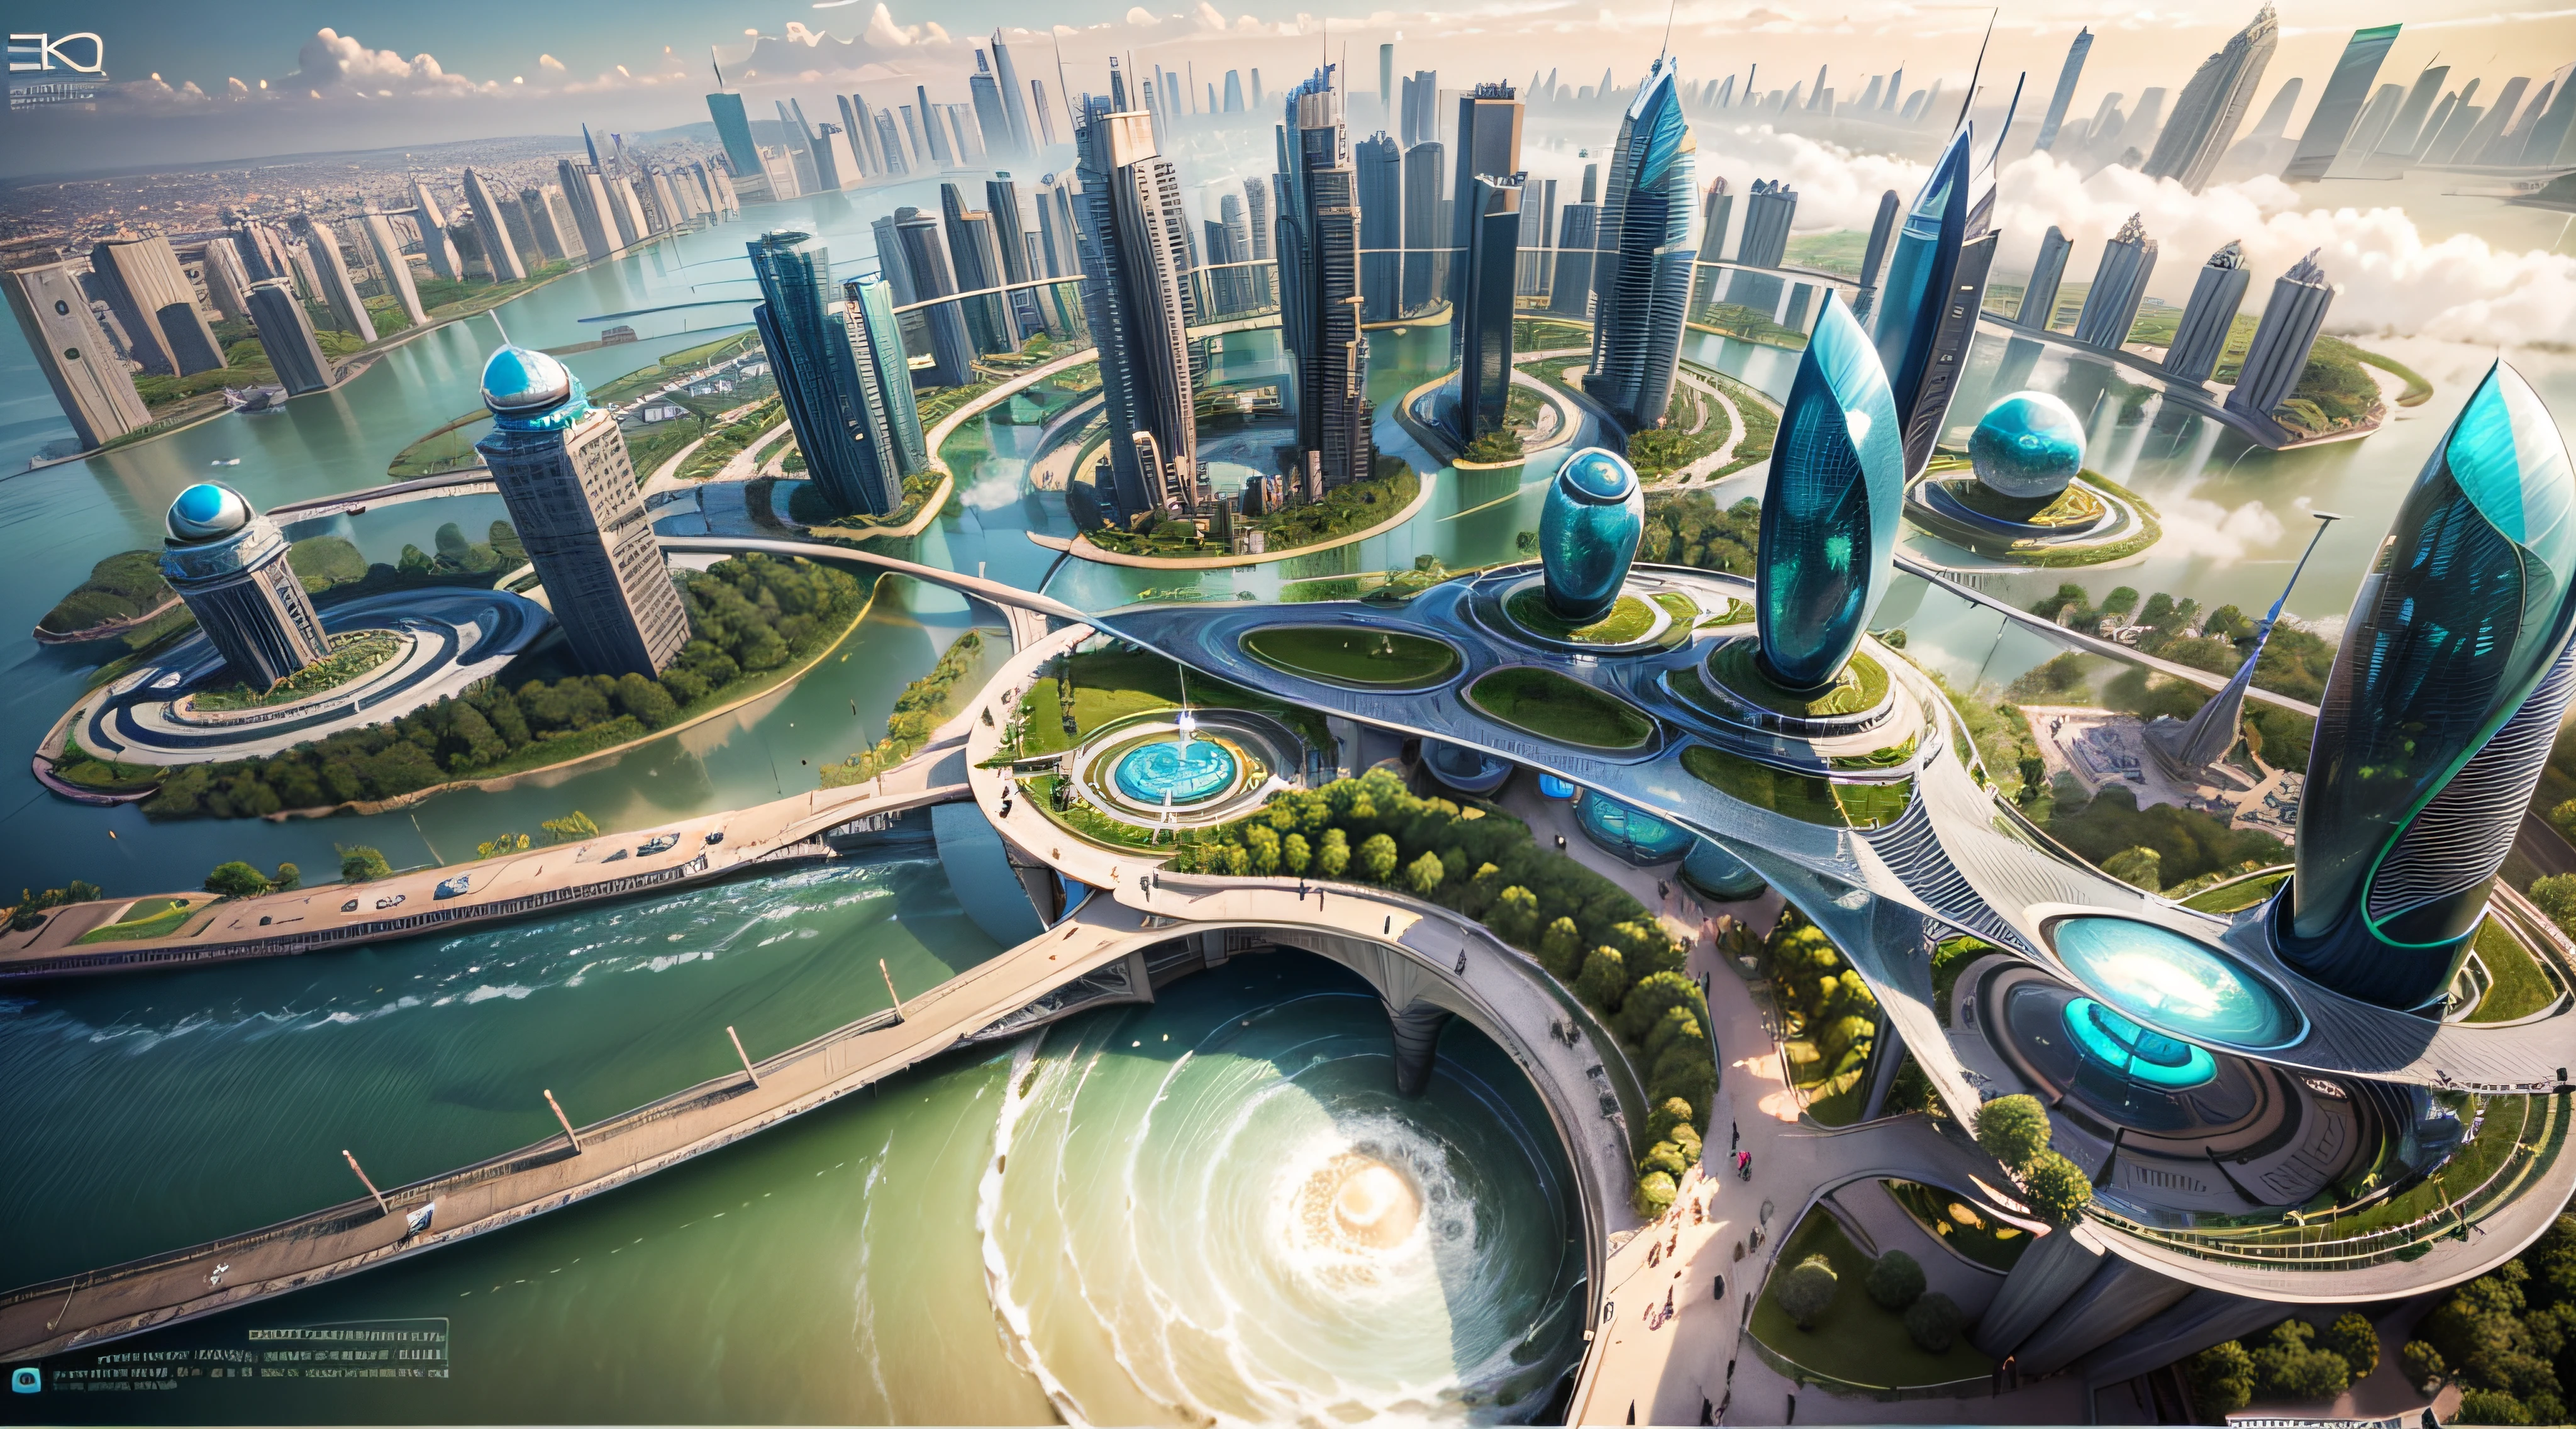 (最好的品質,4k,8K,高解析度,傑作:1.2),超詳細,(實際的,逼真的,照片般逼真:1.37),未來漂浮城市,未来科技,龐大的城市高科技平板平台,飛艇,漂浮在空中,未來城市,周圍有小飛艇,高科技半球形平台,彩灯,先進的架構,現代建築,摩天大樓,存取雲,風景優美,俯瞰城市,令人印象深刻的設計,與自然無縫融合,充滿活力和活力的氛圍,未來交通系統,停車已暫停,透明路徑,郁郁葱葱的绿色植物,空中花園,瀑布,壯麗的天際線,水面上的倒影,波光粼粼的河流,建築創新,未來派的摩天大樓,透明圓頂,建築物的形狀很不尋常,高架走道,令人印象深刻的天際線,发光的灯光,未来科技,簡約設計,風景名勝區,全景,穿雲塔,鮮豔的色彩,史詩般的日出,史詩般的日落,炫目的燈光顯示,神奇的氛围,未來城市,城市烏托邦,奢華生活方式,創新能源,永續發展,智慧城市技術,先進的基礎設施,宁静的气氛,自然與科技和諧相處,令人驚嘆的城市景觀,前所未有的都市規劃,建築與自然無縫銜接,高科技大都市,尖端的工程奇蹟,城市生活的未來,富有遠見的建築概念,節能建築,與環境和諧,一座漂浮在雲端的城市,烏托邦夢想成現實,可能性是無止境,最先進的交通網絡,綠色能源融合,創新材料,令人印象深刻的全息顯示,先進的通訊系統,令人驚嘆的鳥瞰圖,安靜祥和的環境,現代主義美學,空灵之美